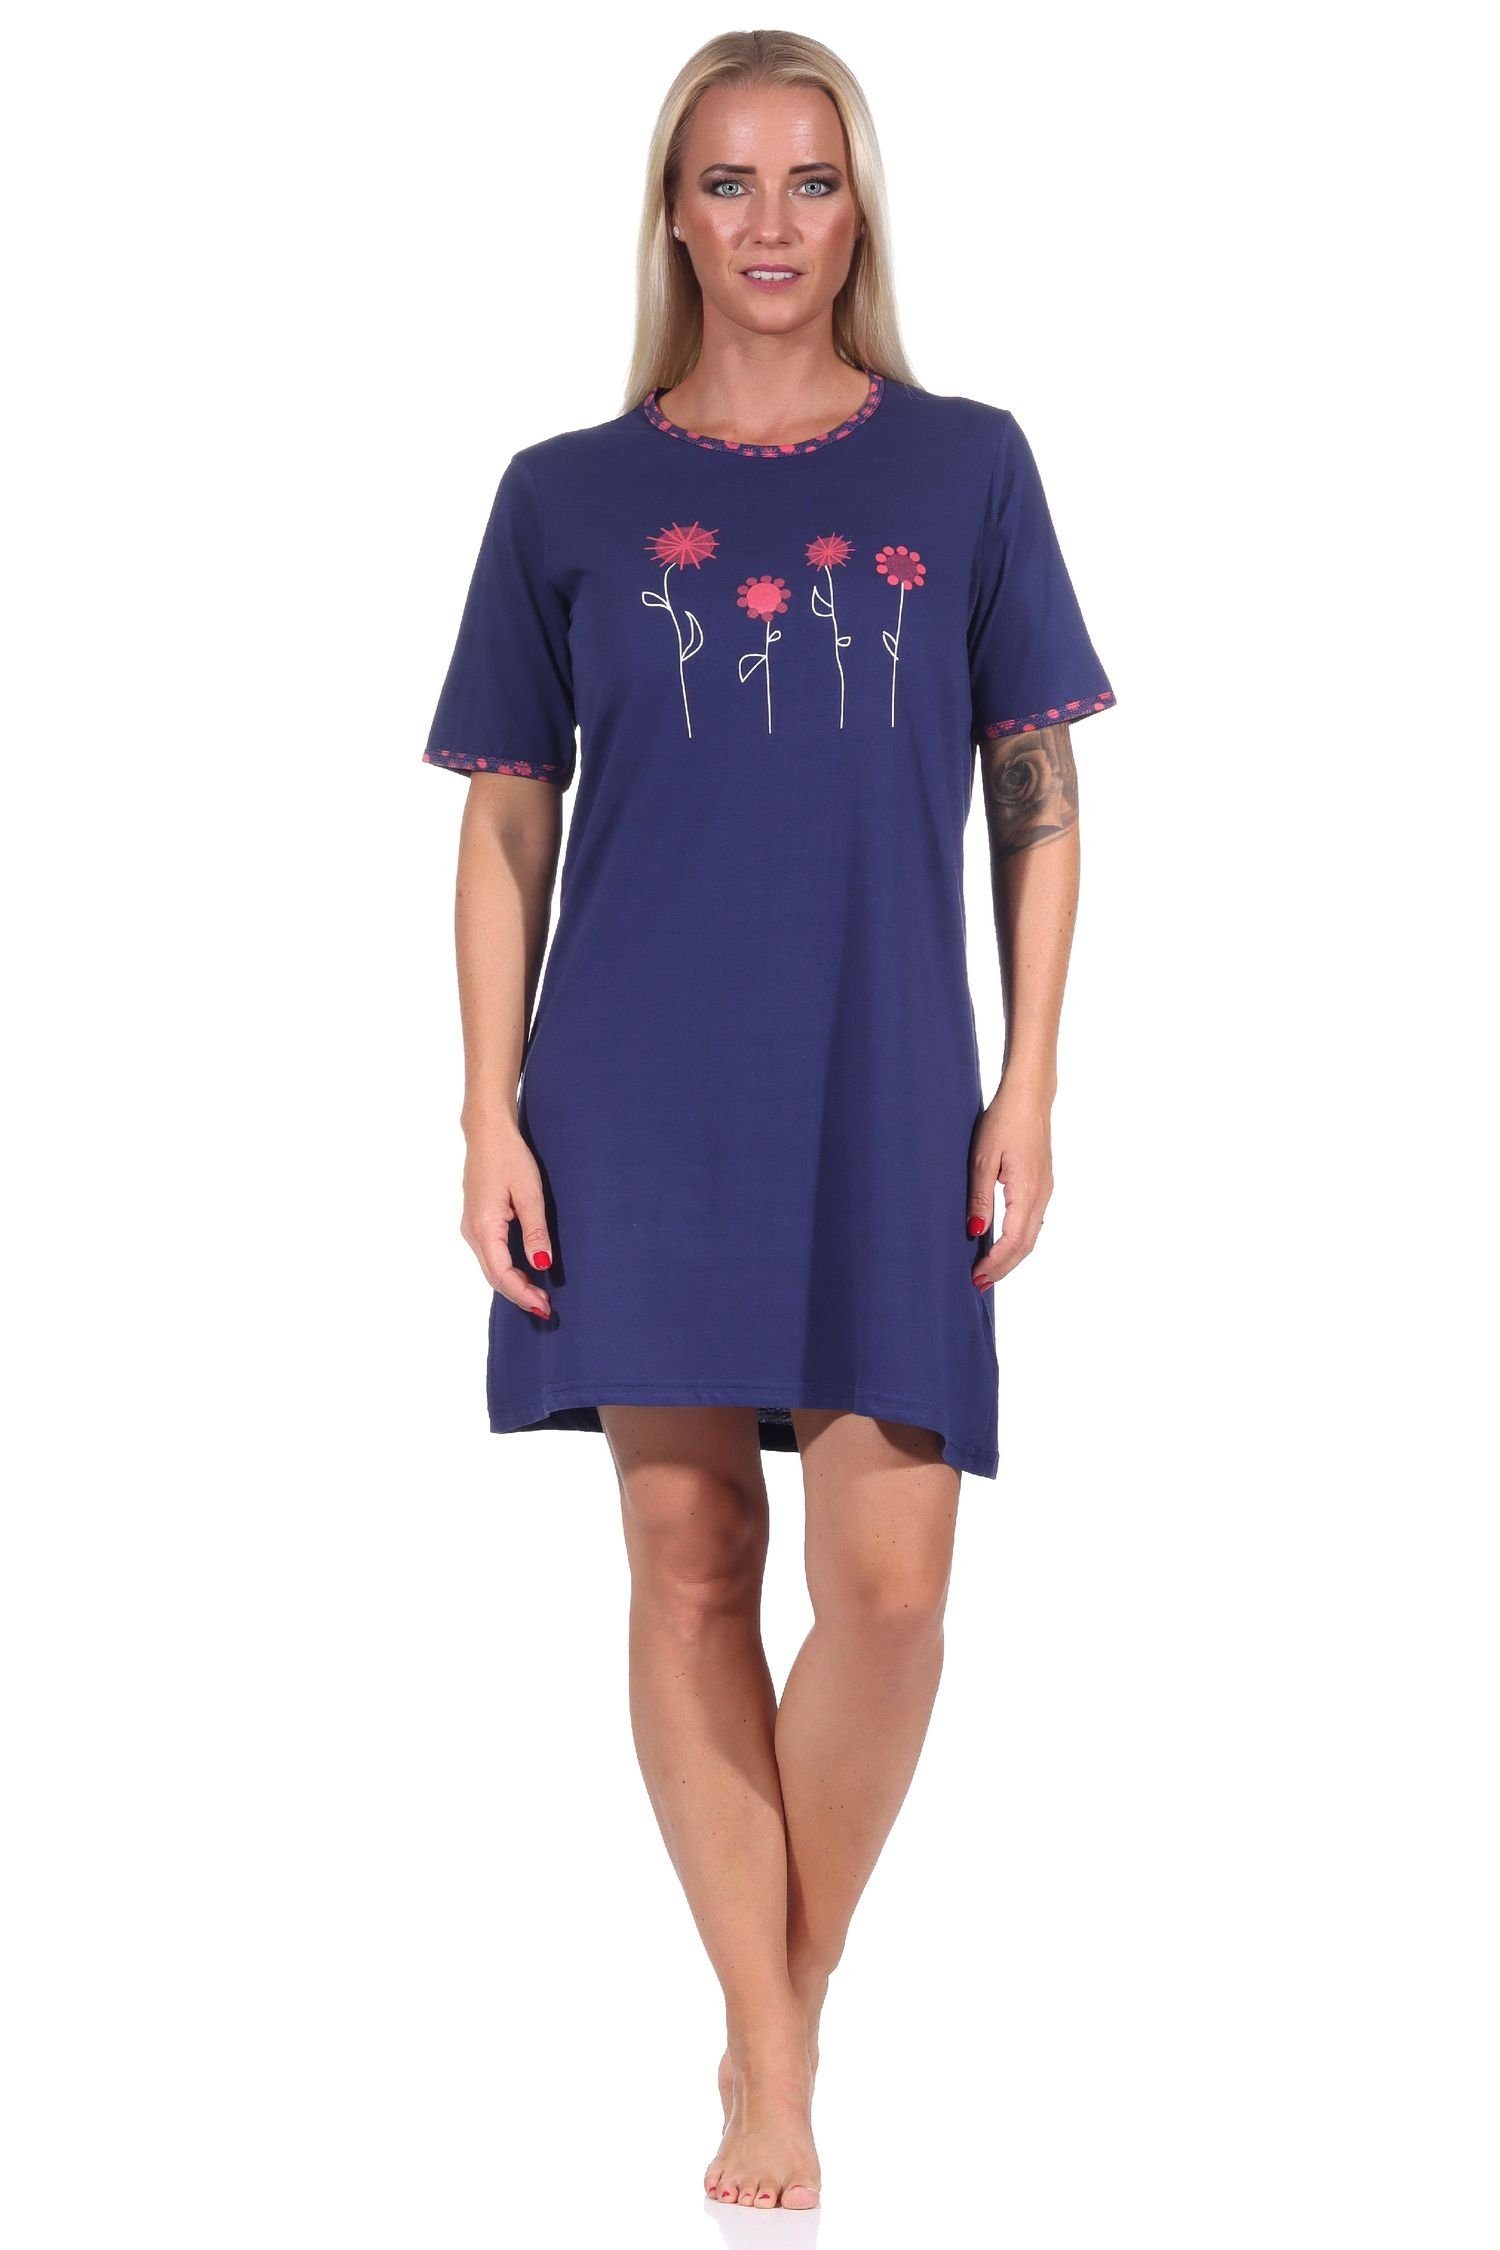 RELAX by Normann Nachthemd Edles Damen kurzarm Nachthemd mit floralen Frontprint - 122 10 602 navy